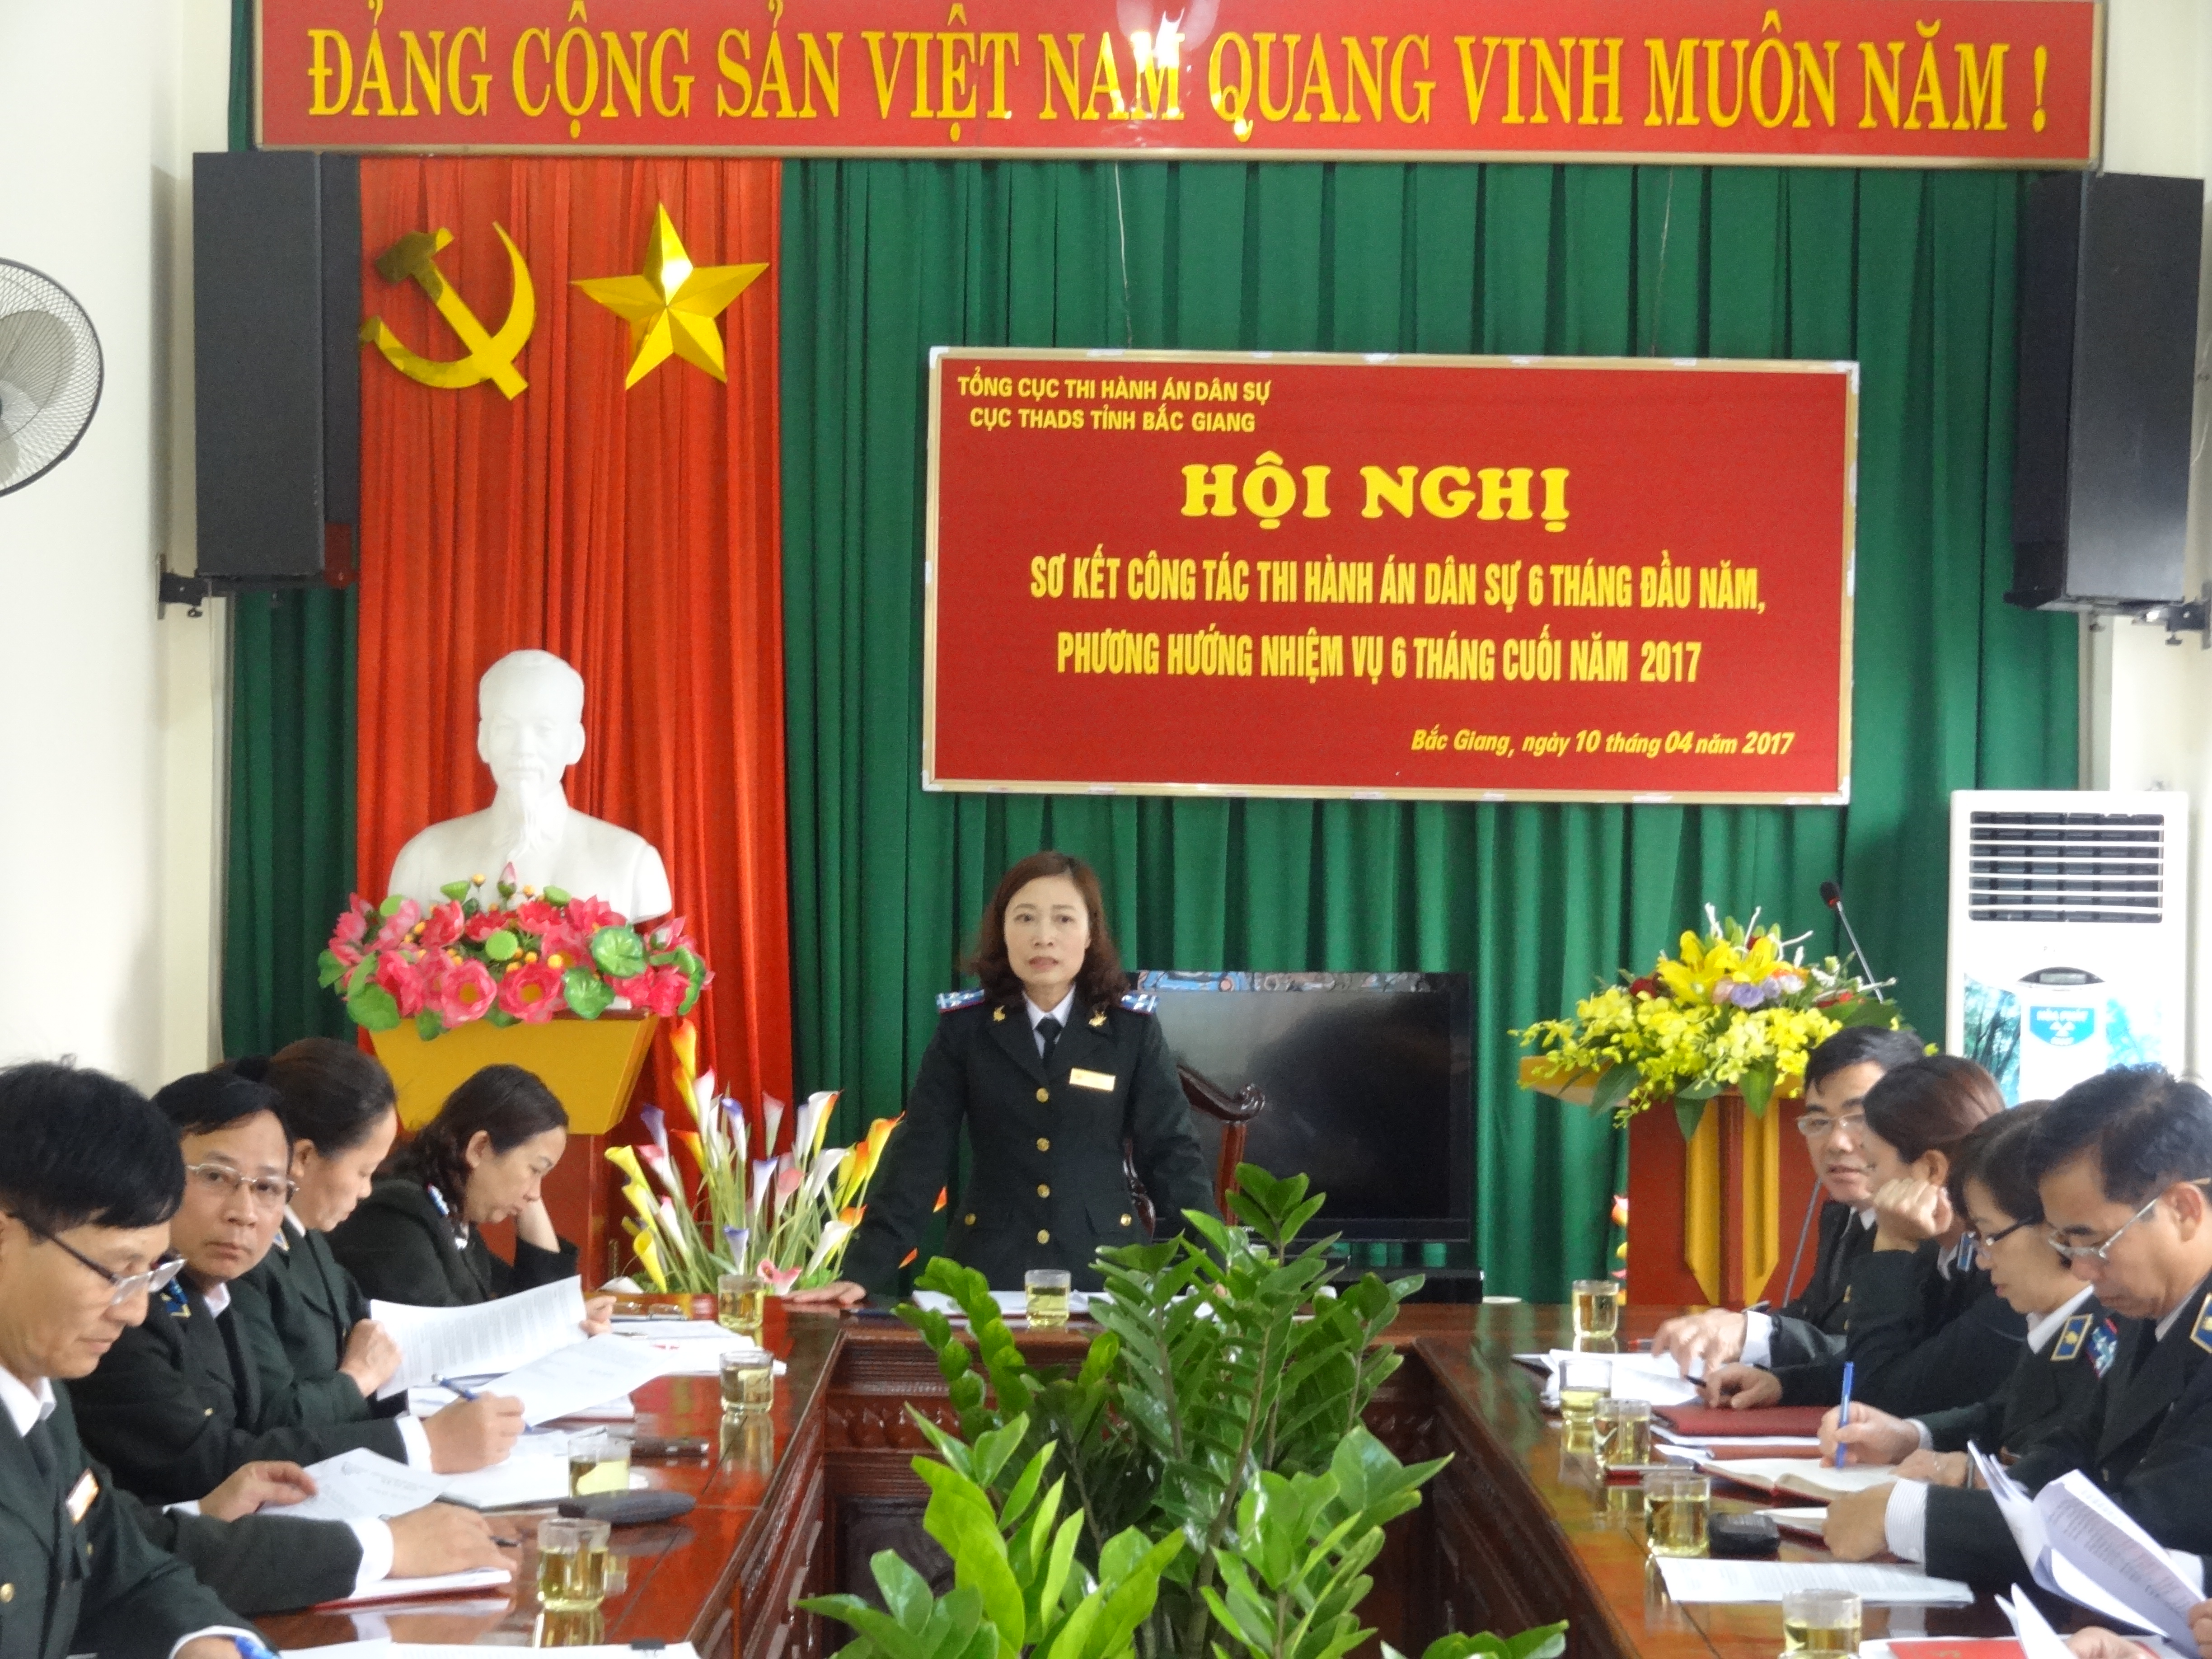 Cục Thi hành án dân sự tỉnh Bắc Giang tổ chức Hội nghị sơ kết công tác thi hành án dân sự 6 tháng đầu năm 2017